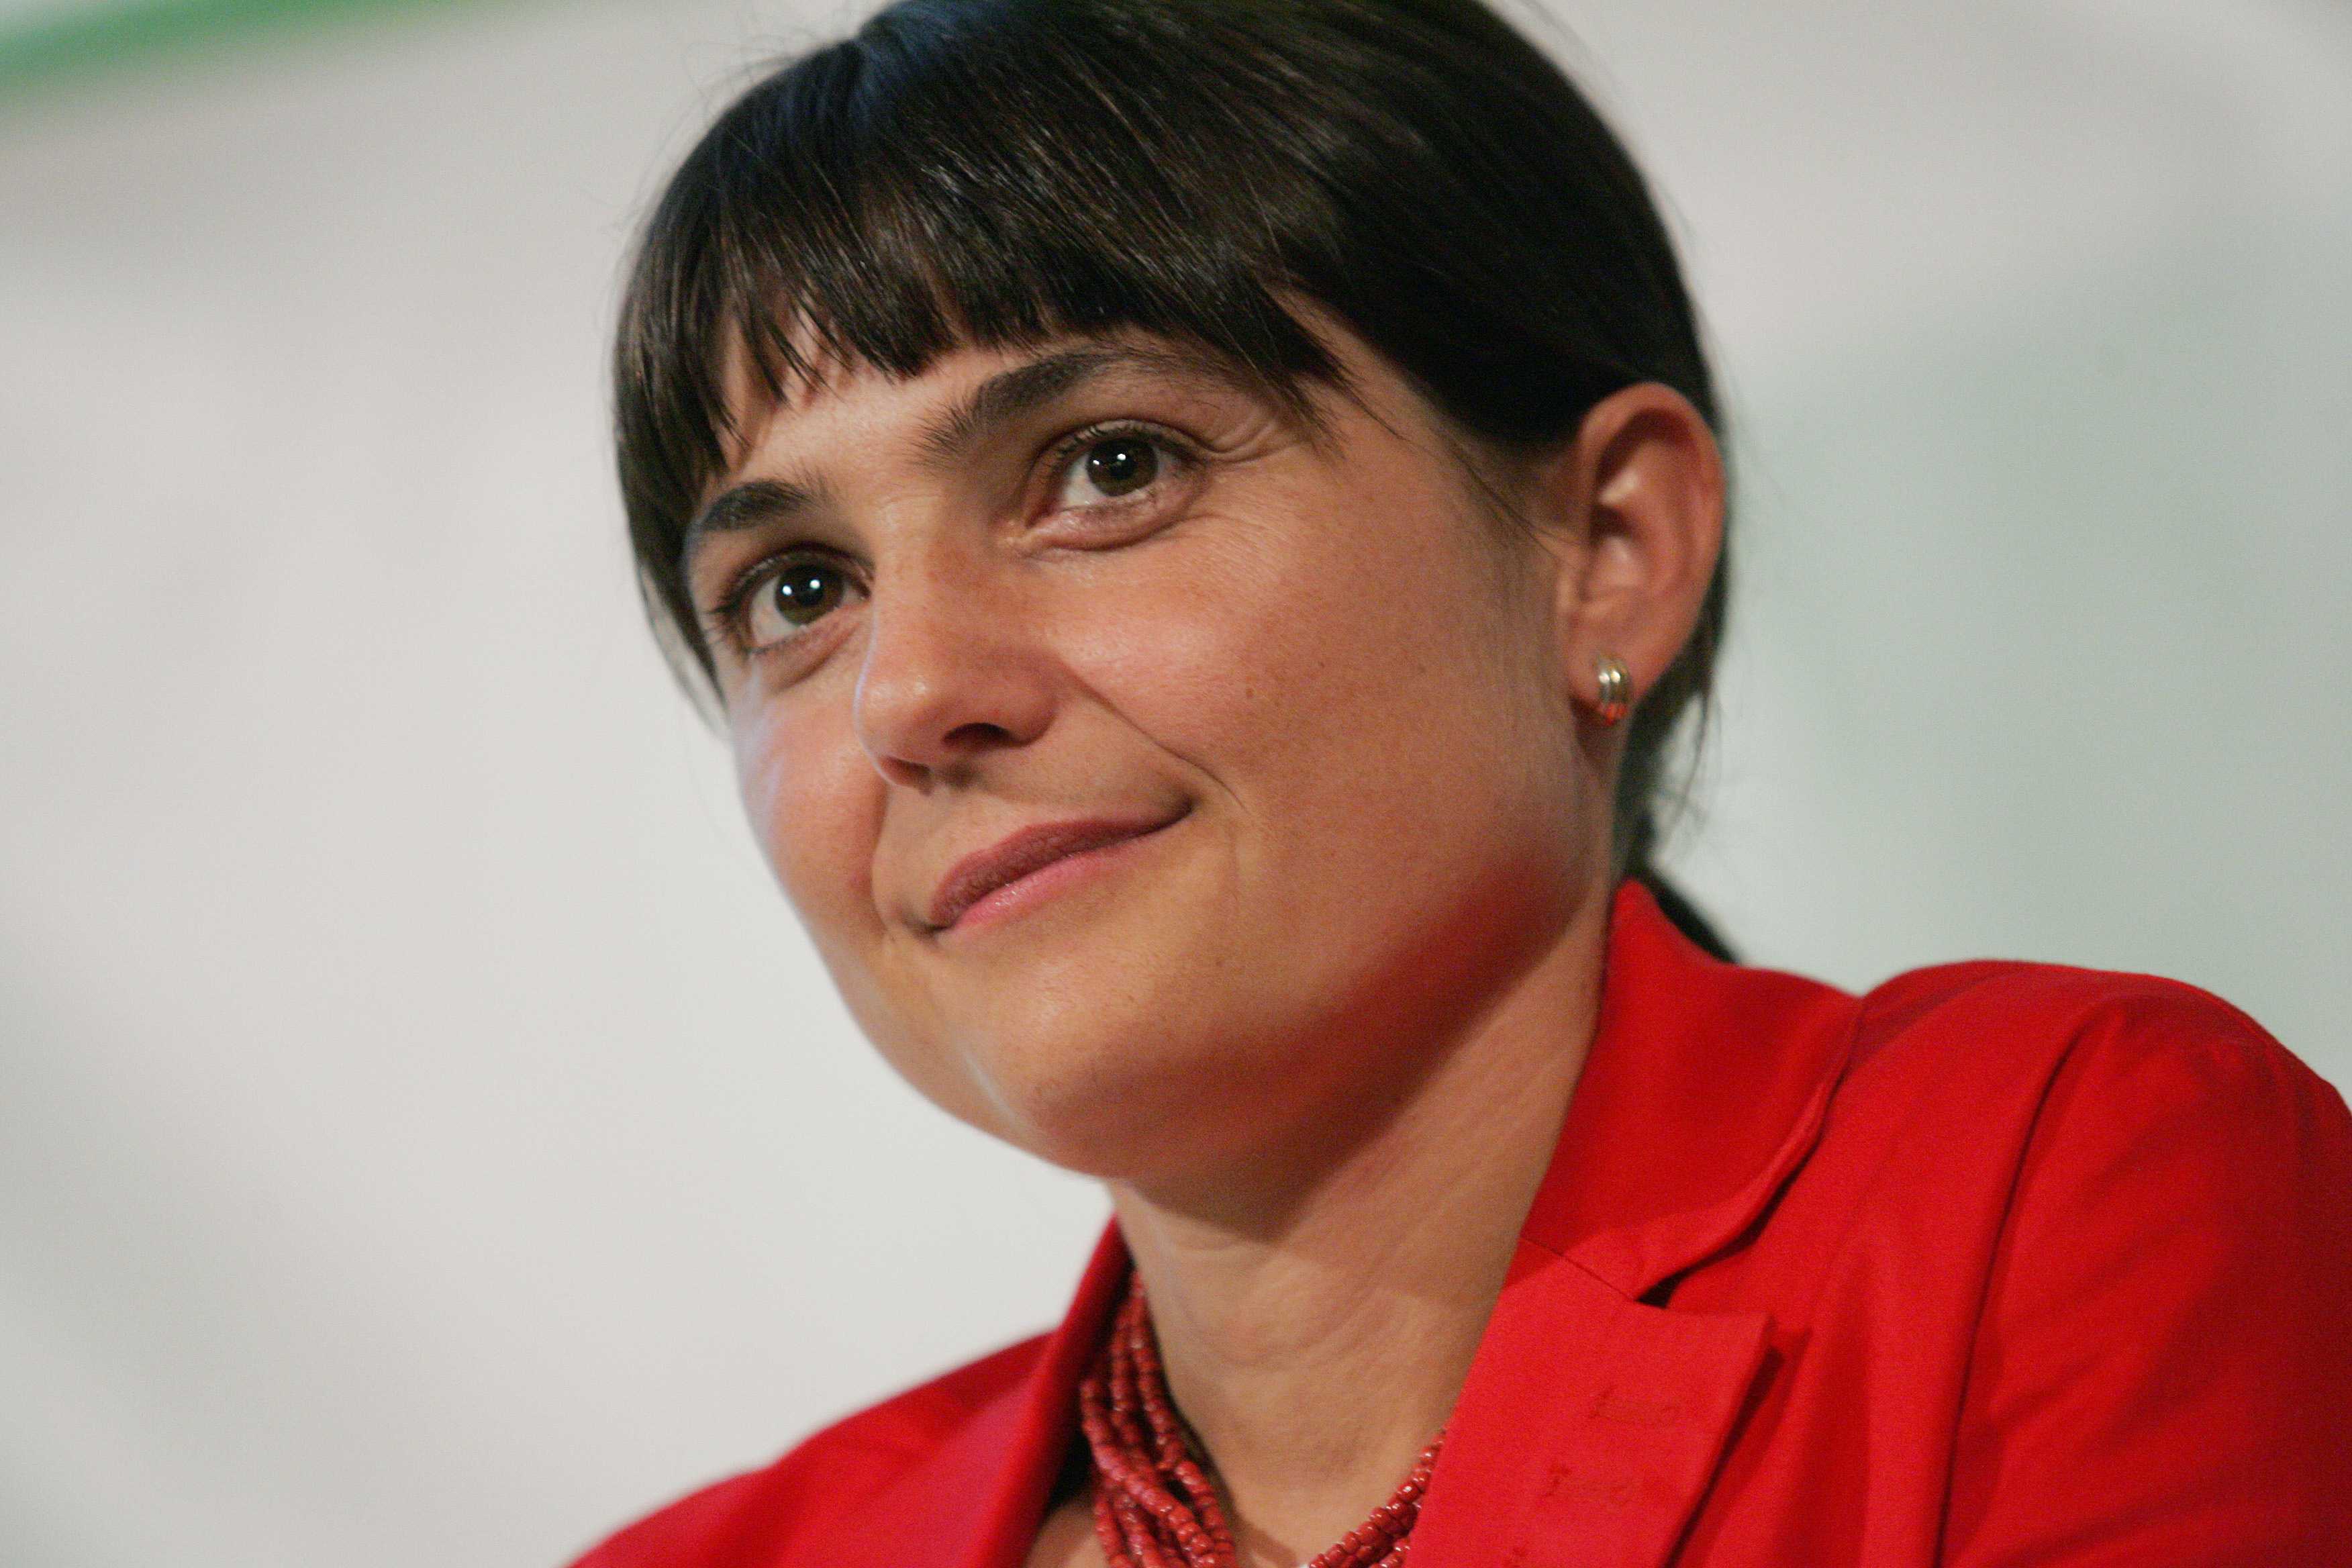 La danza delle polemiche sul Jobs Act, Serracchiani attacca Boldrini: «Eccesso di posizione»